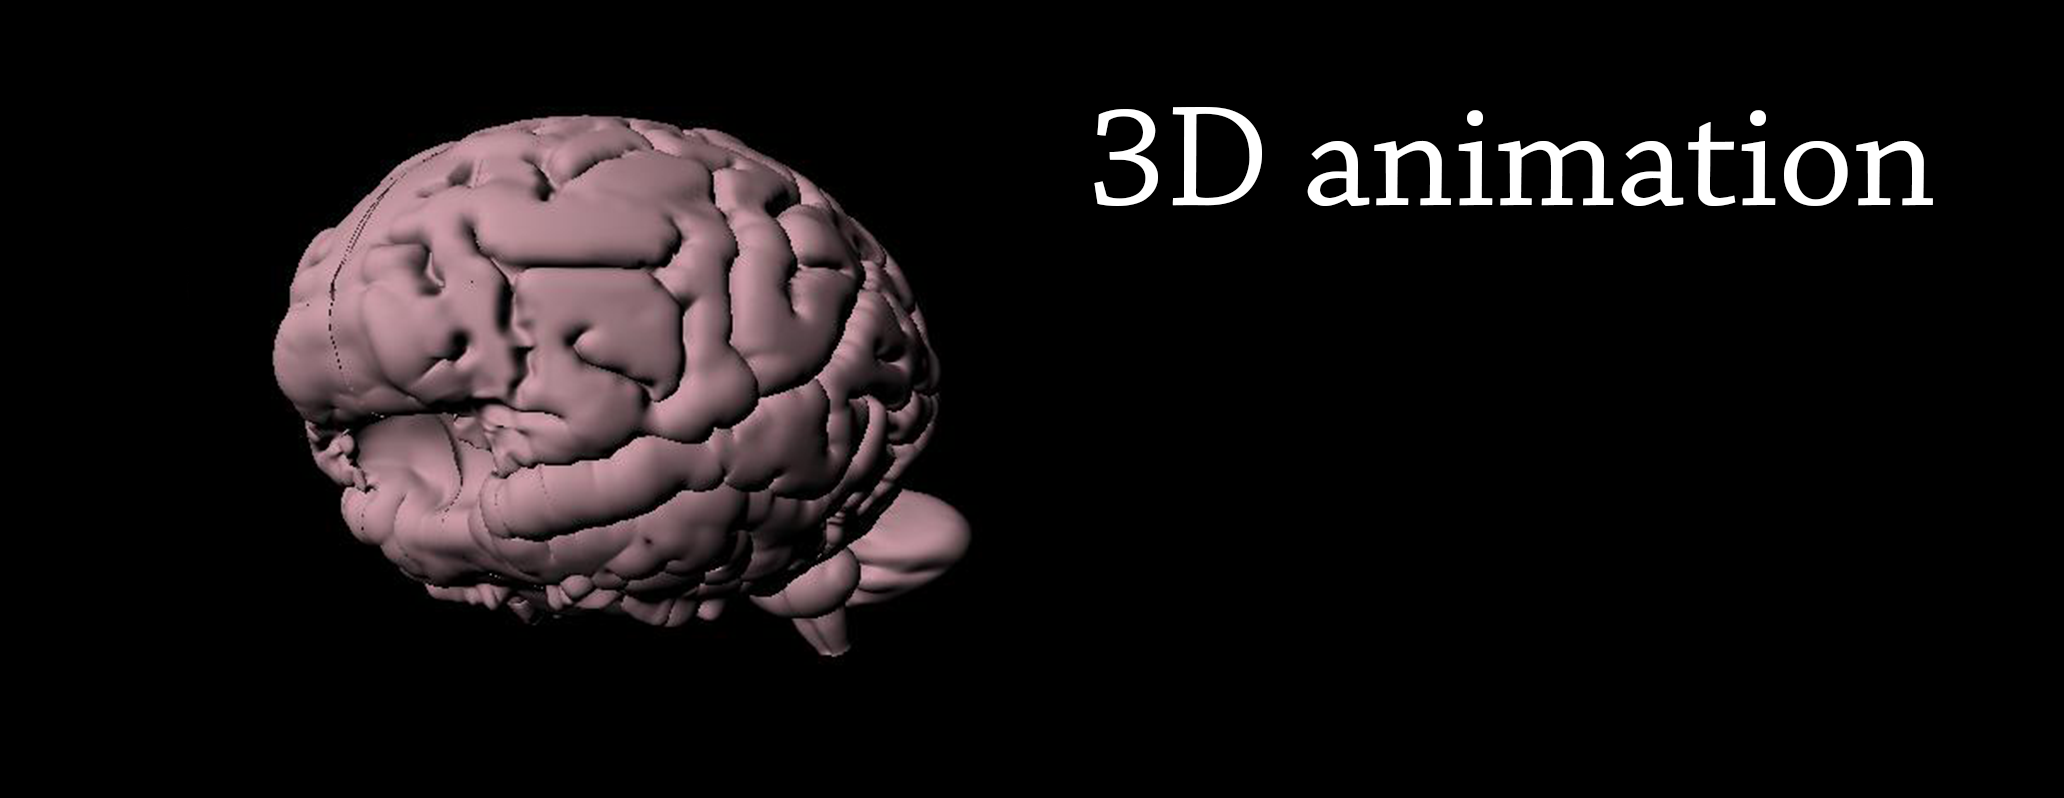 Cervello: scatto iniziale di un'animazione 3D per localizzare il nucleo reticolare talamico